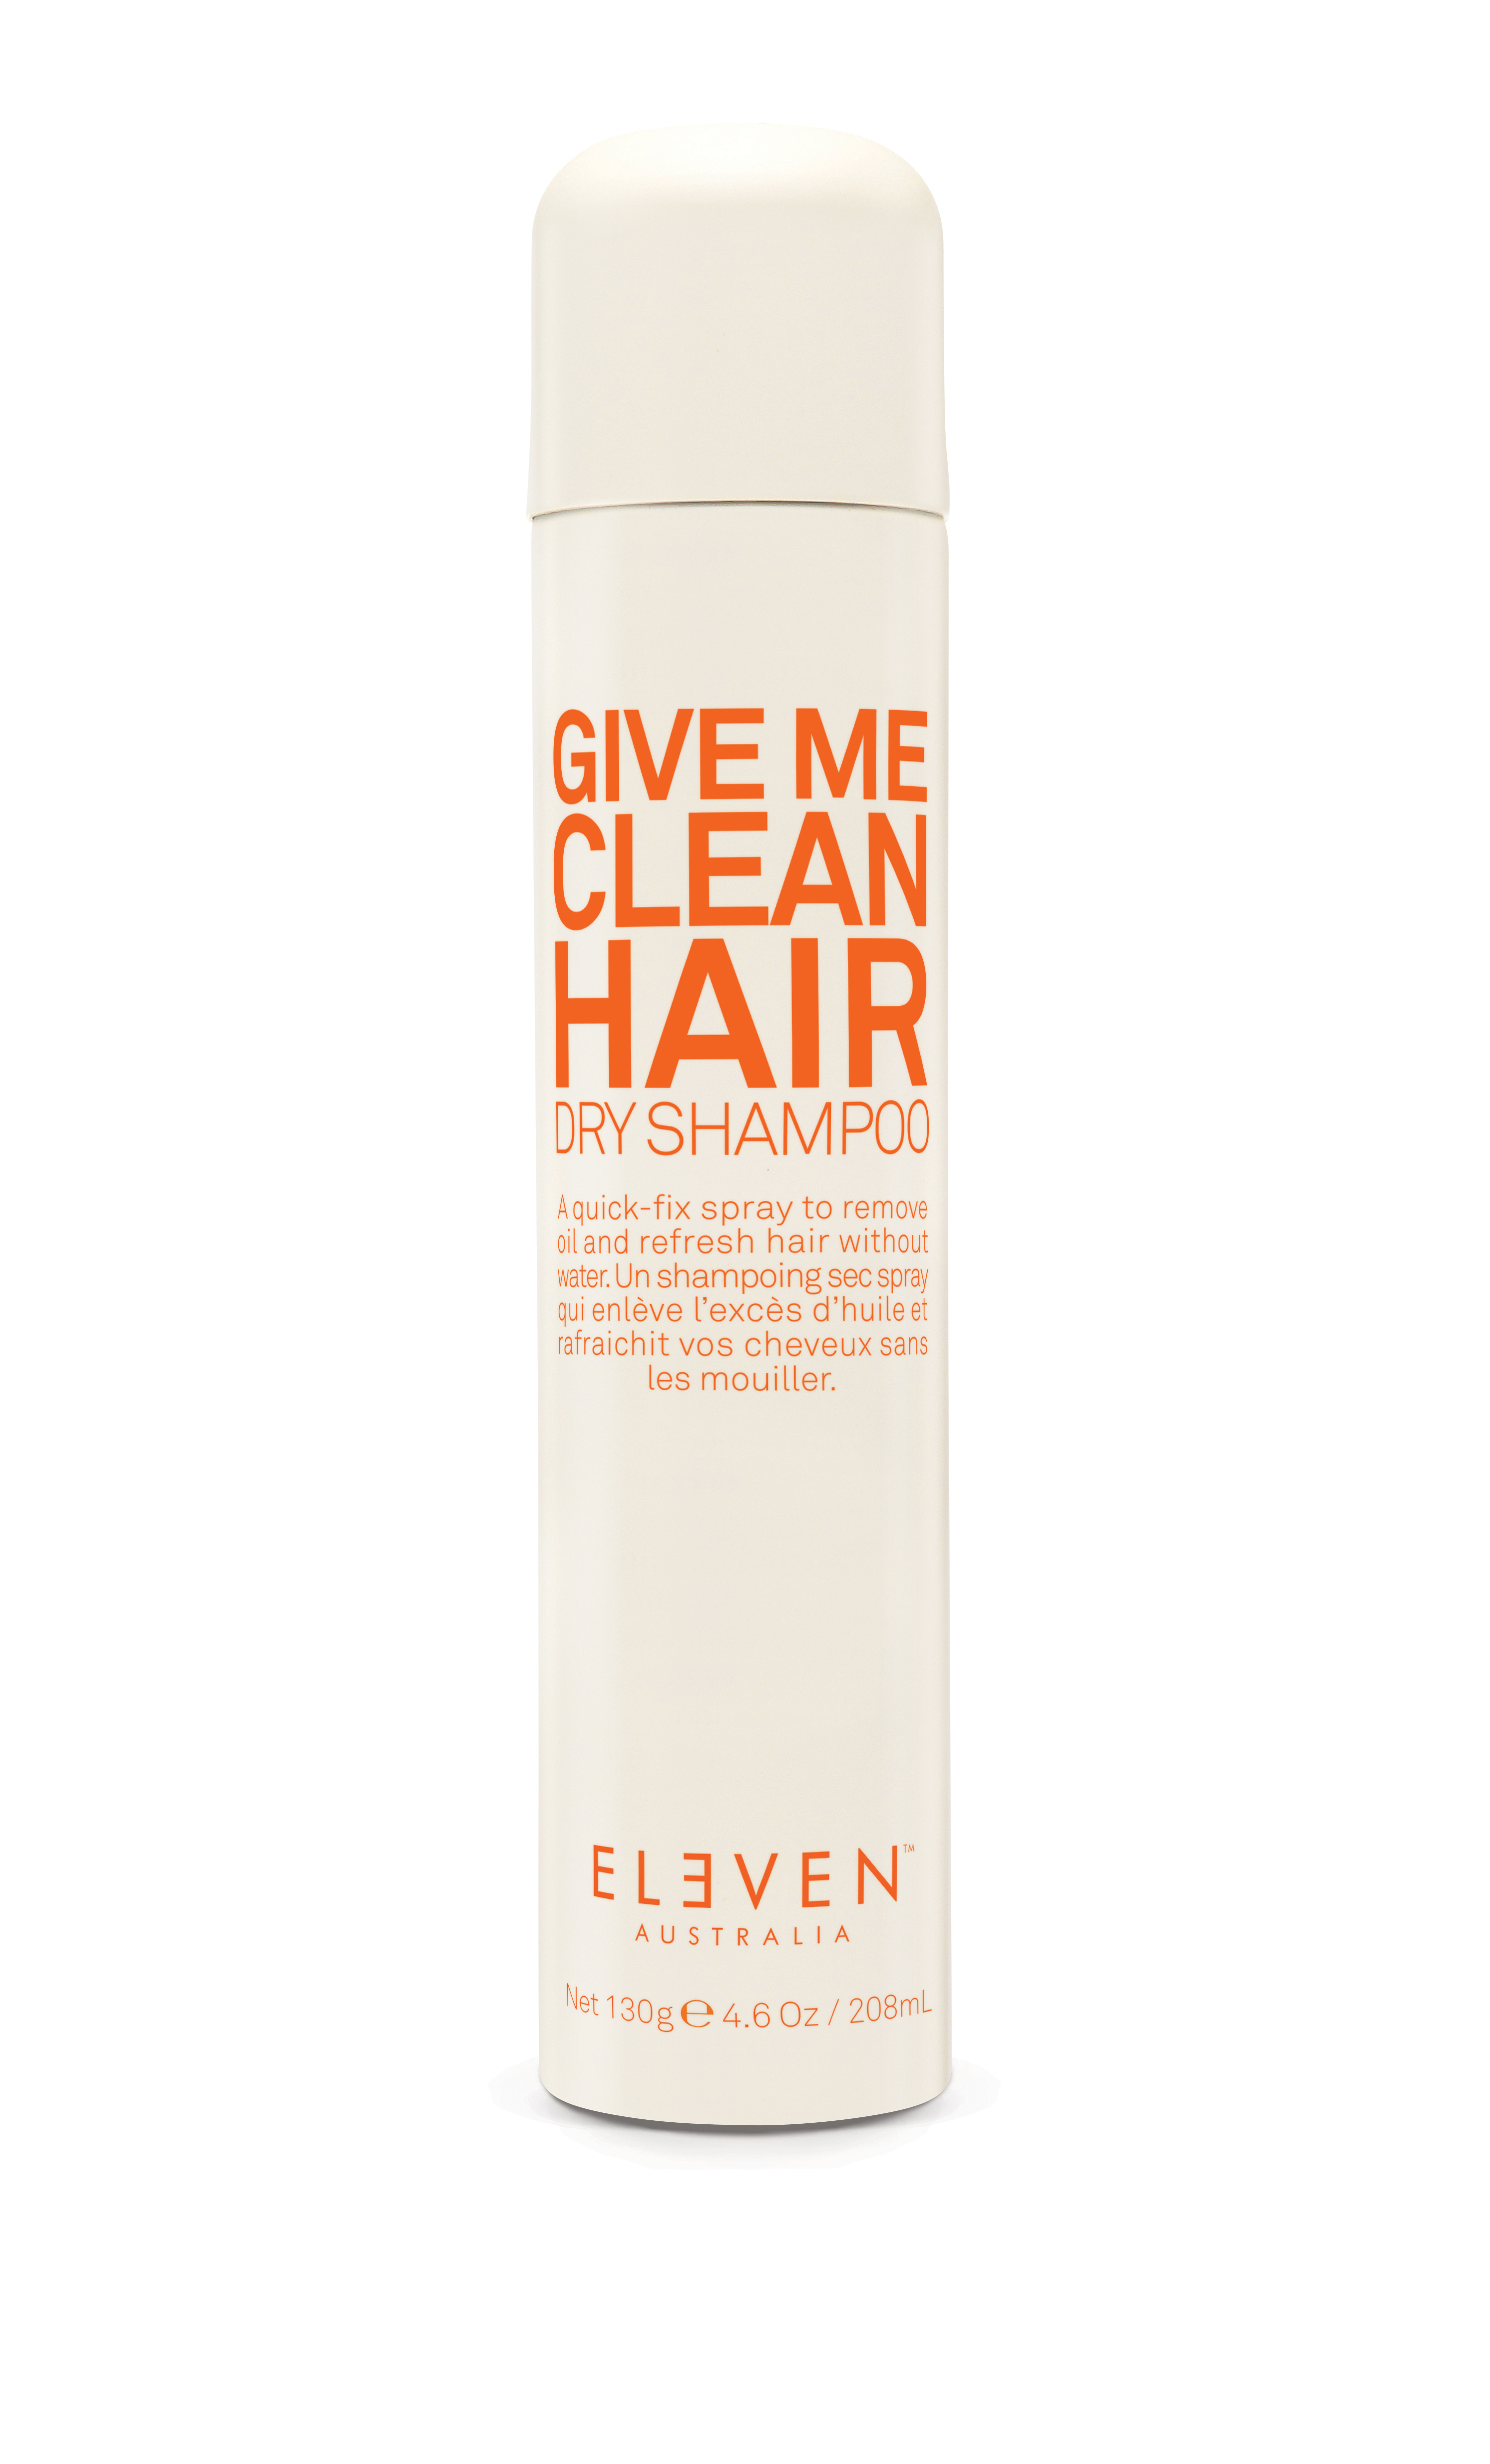 Australia Give Me Clean Hair Dry Shampoo 130 g | lyko.com